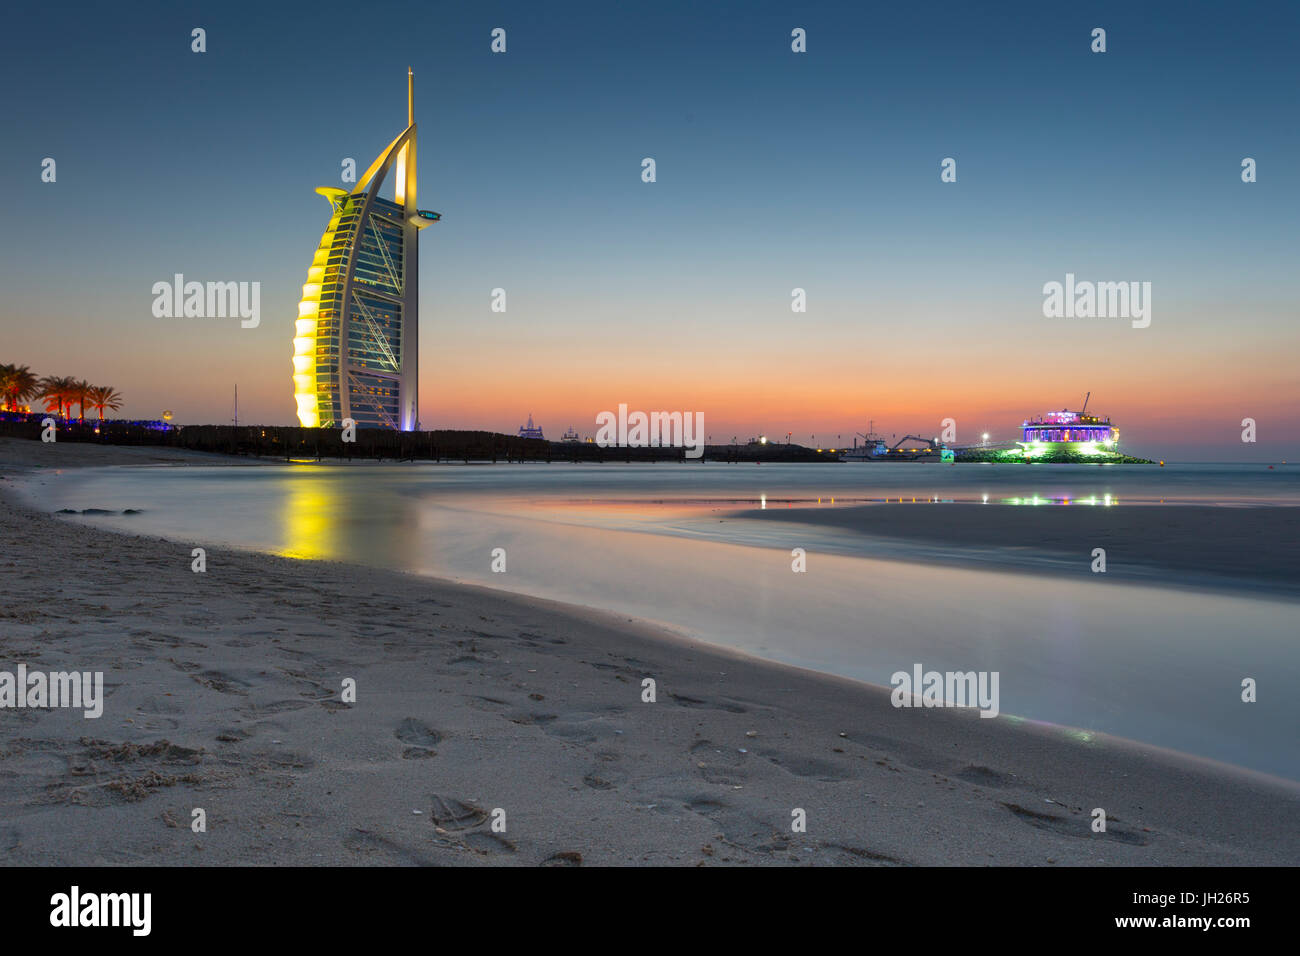 El Burj Al Arab Hotel después del atardecer en la playa de Jumeirah, Dubai, Emiratos Árabes Unidos, Oriente Medio Foto de stock